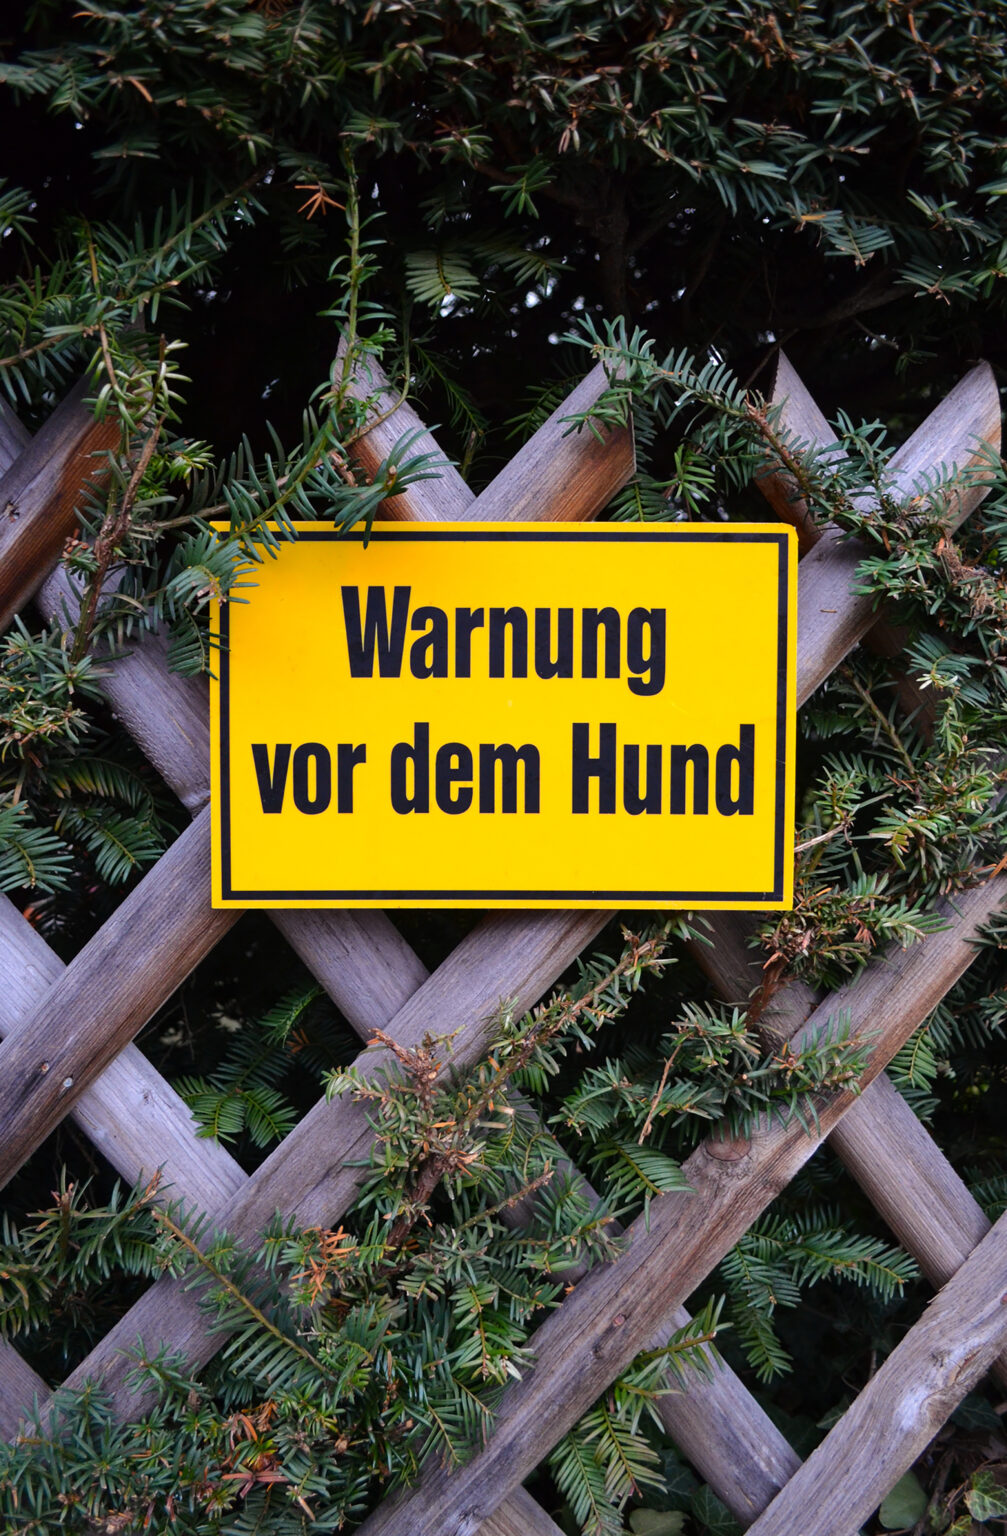 Warnschild an Gartenzaun "Warnung vor dem Hund"